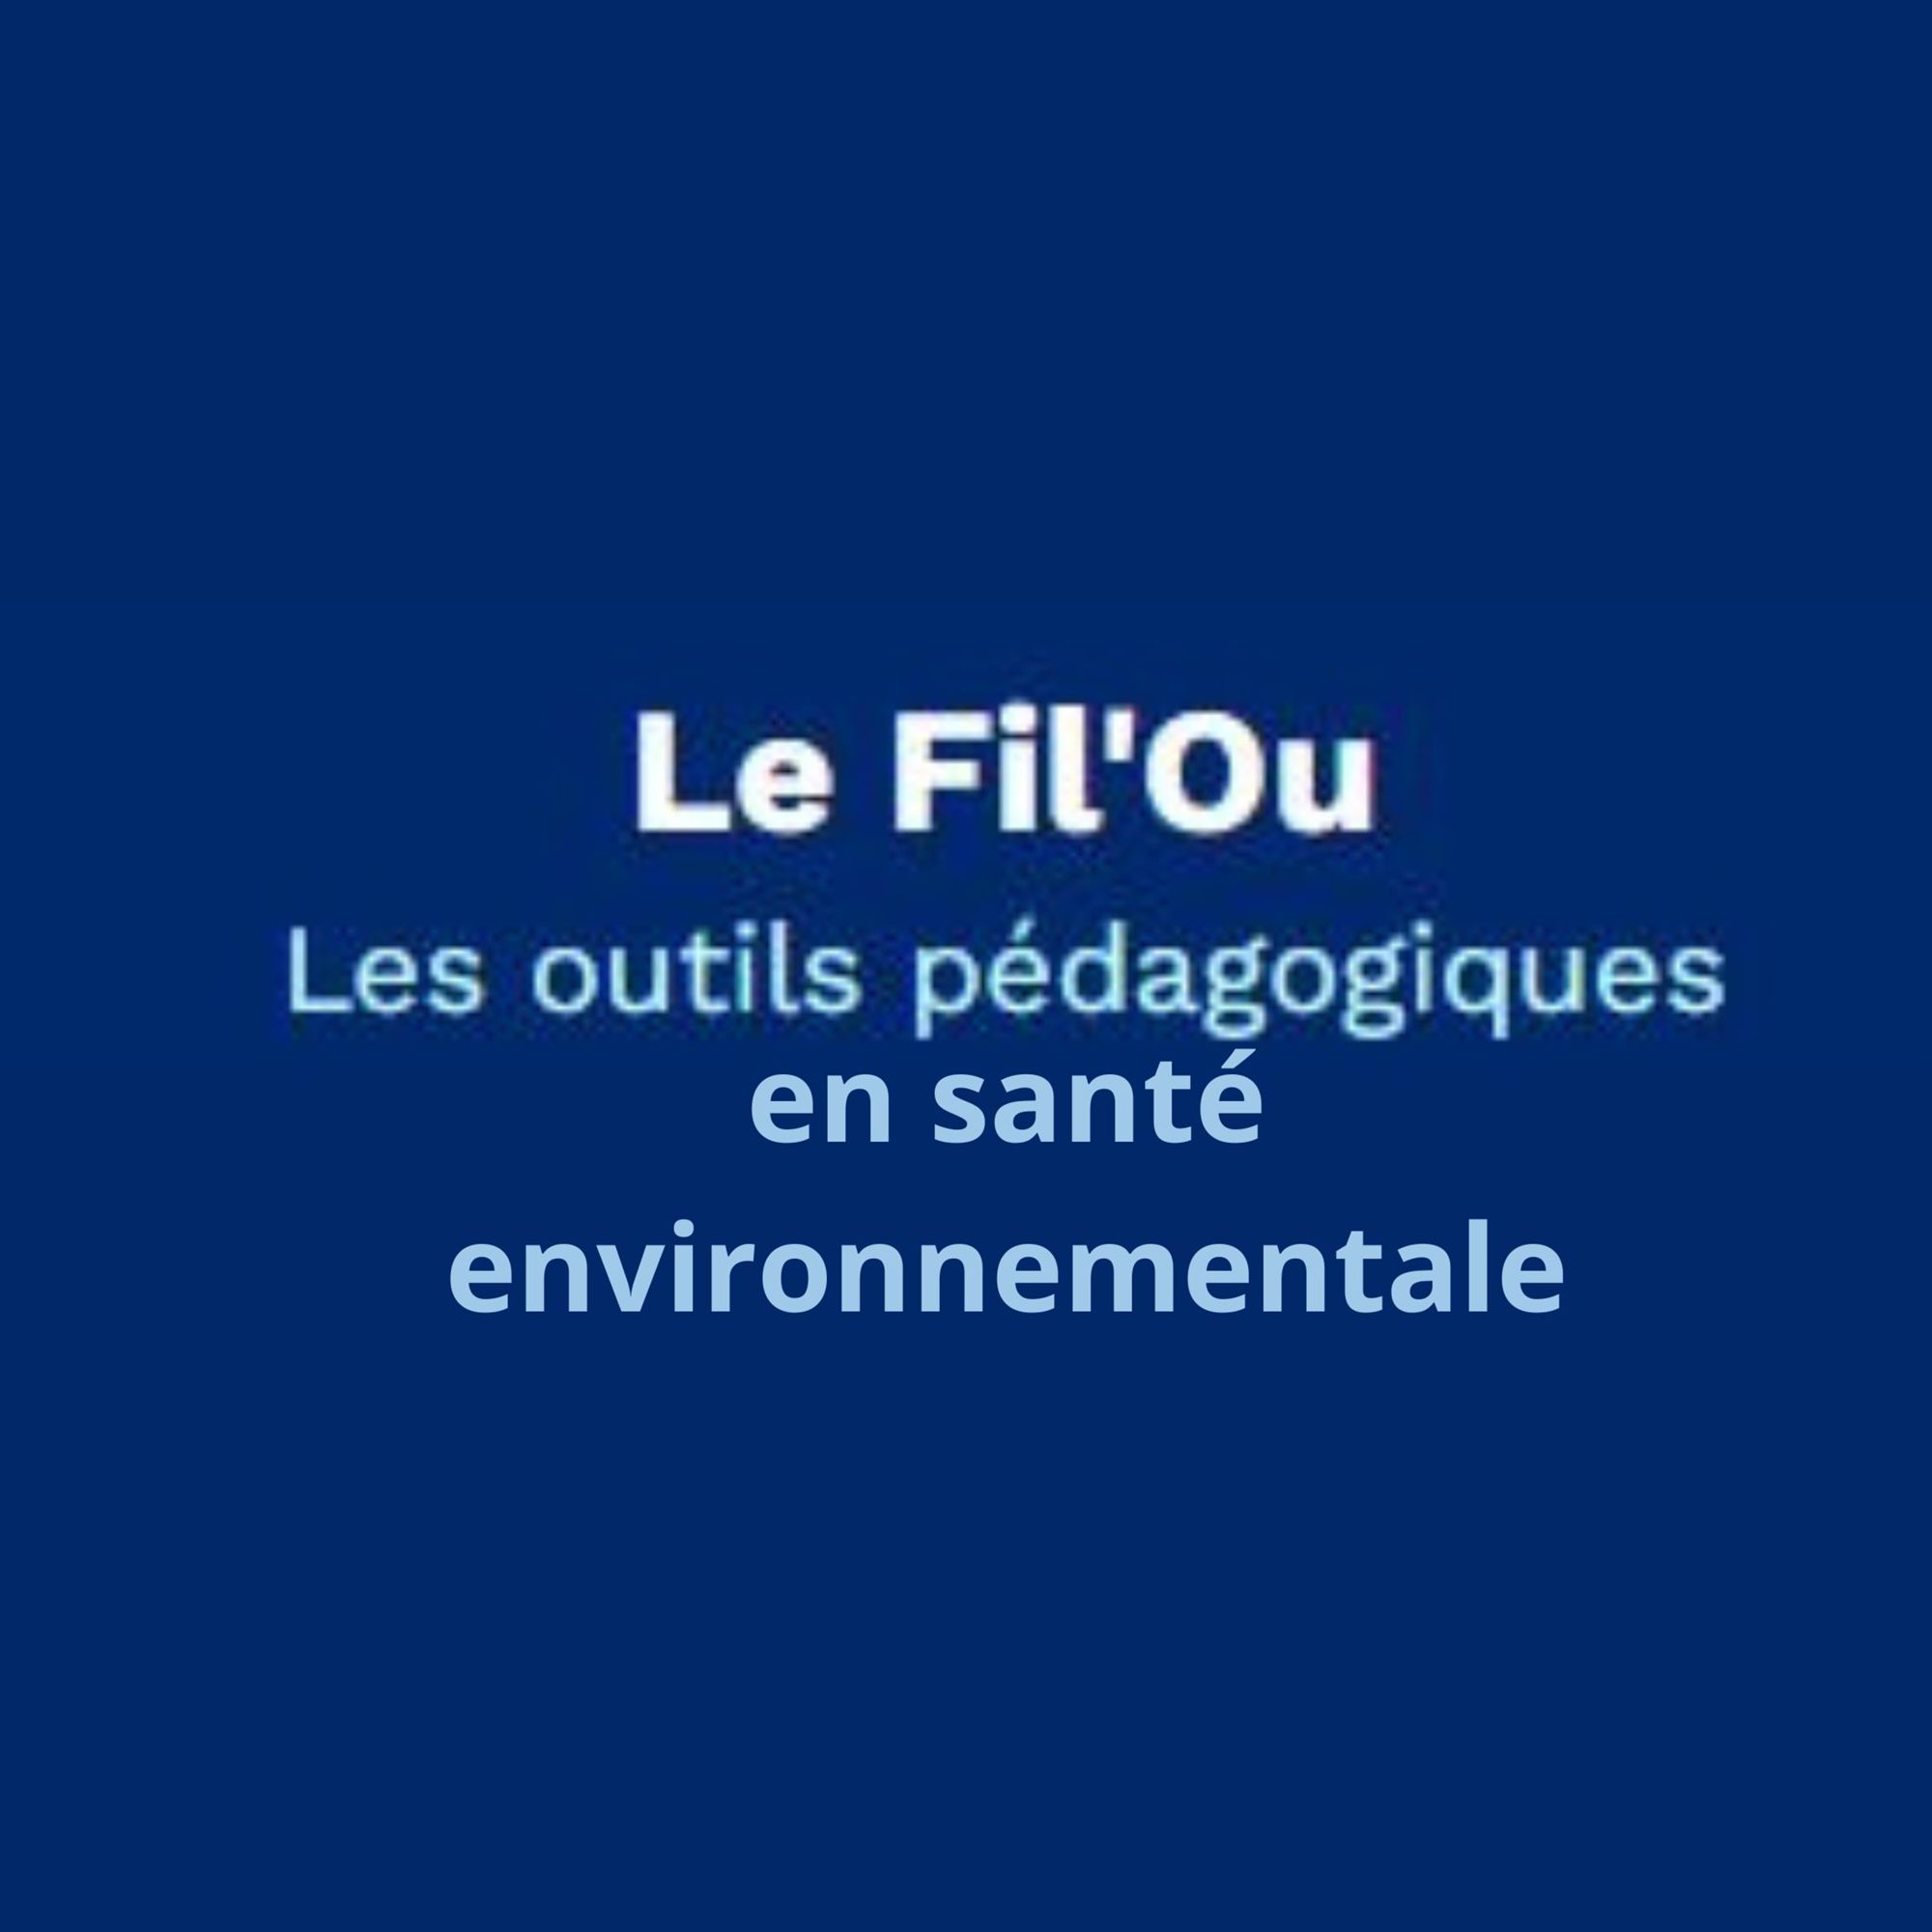 Le Fil'Ou : Les outils pédagogiques en santé environnementale